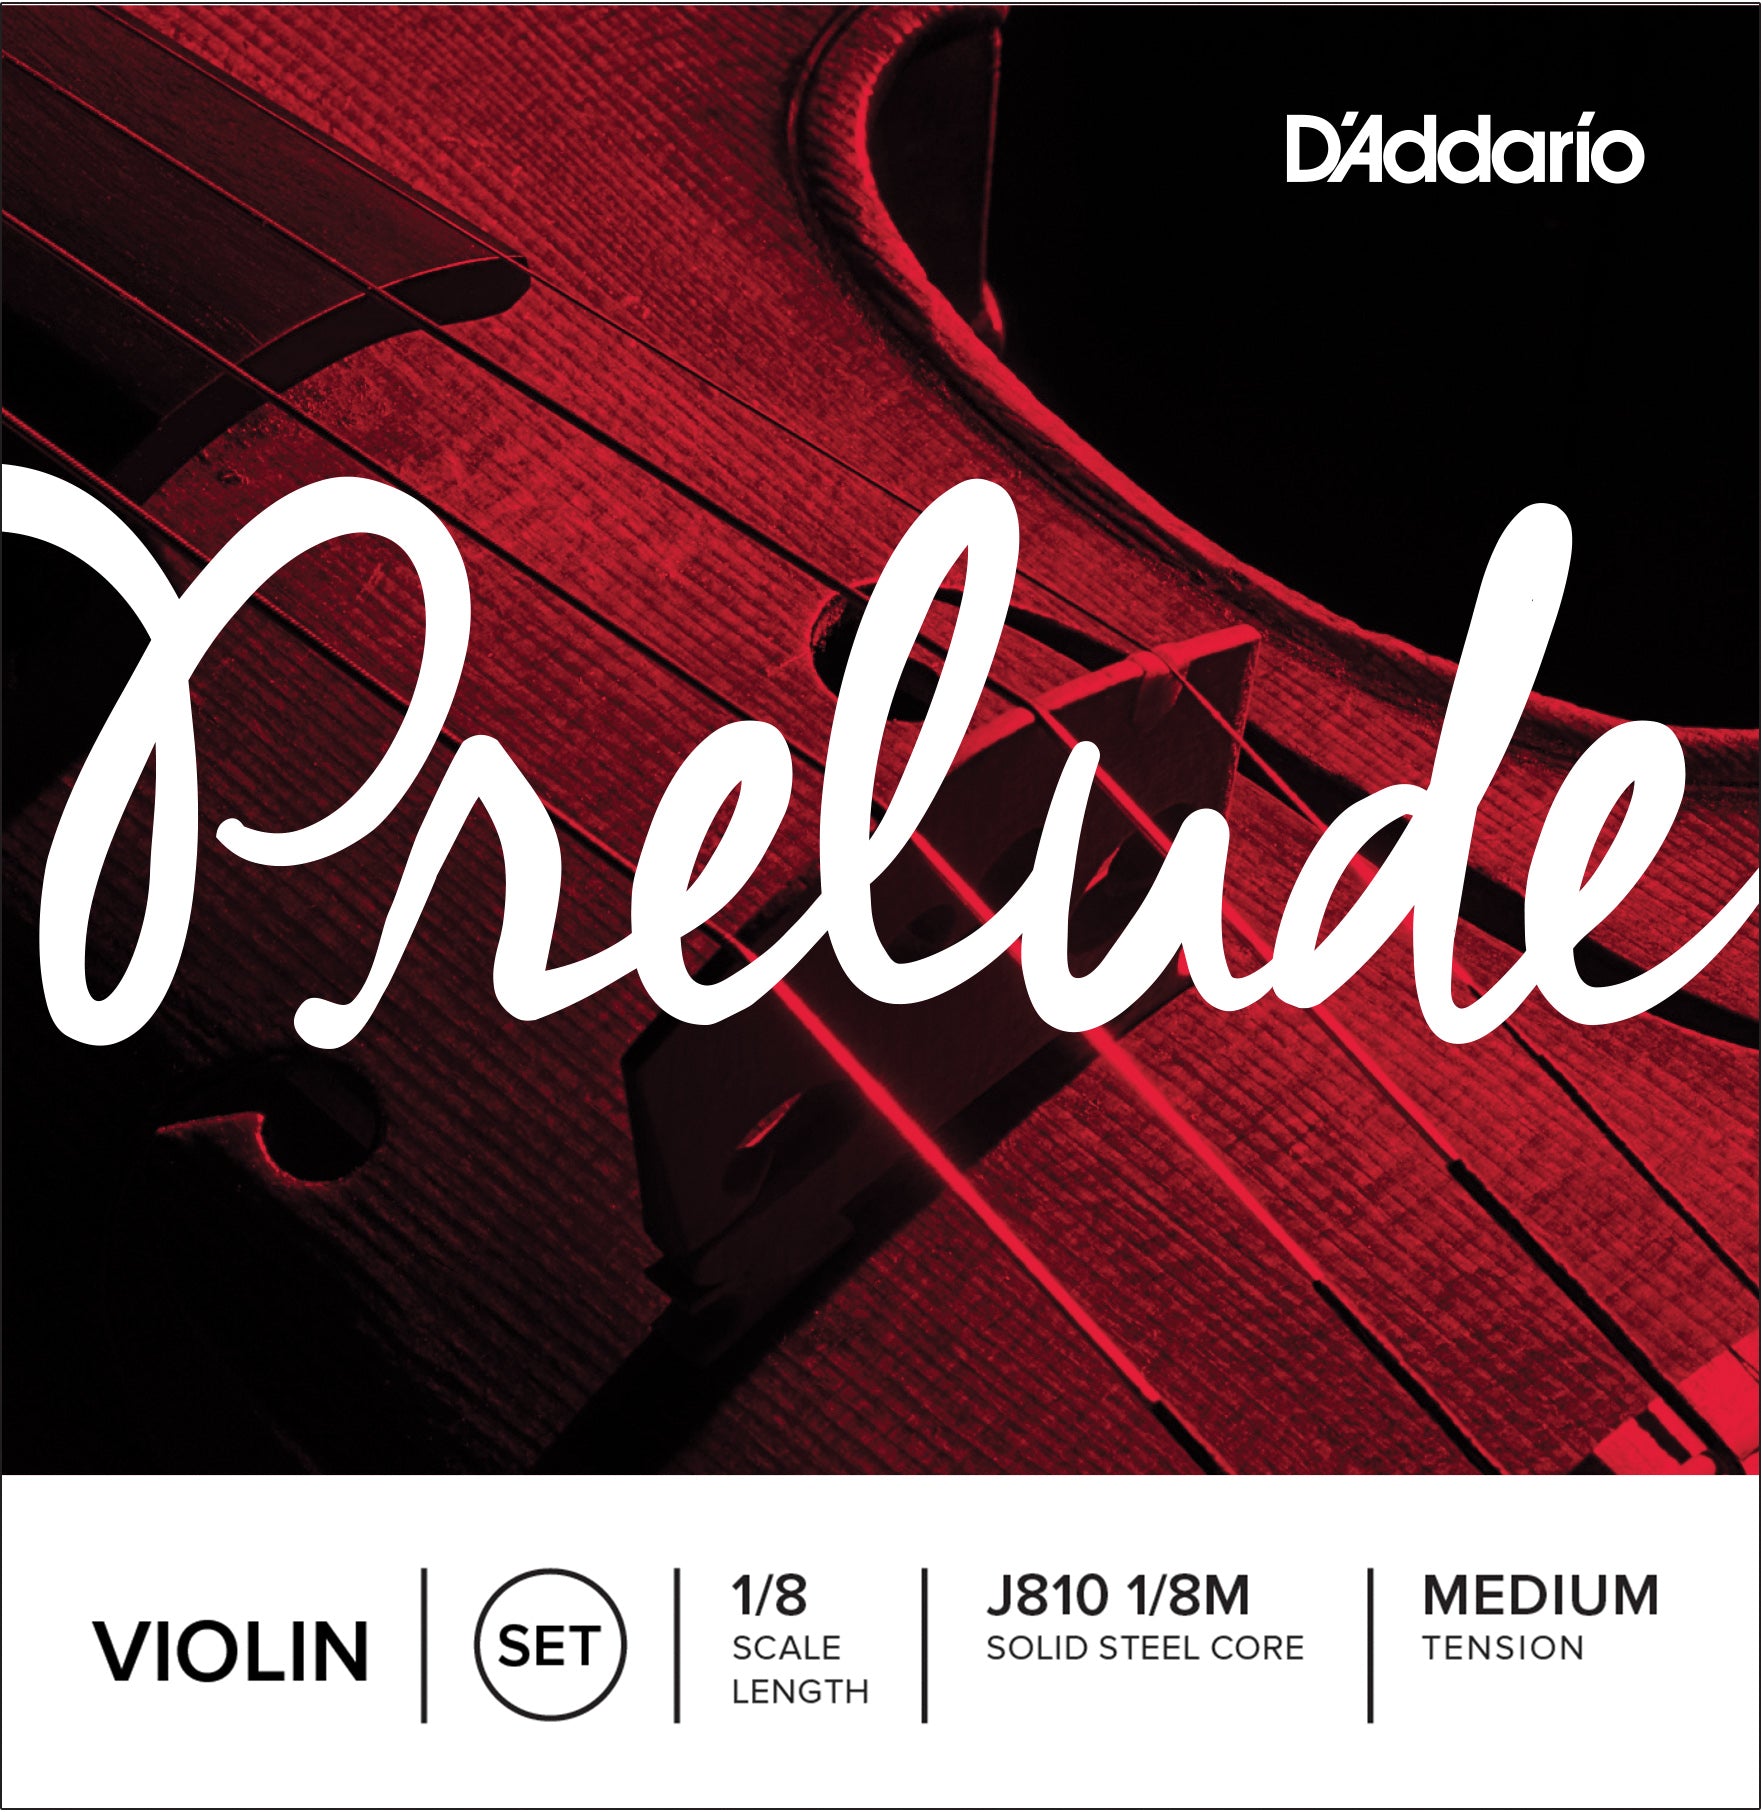 Encordado violín 1/8 Prelude